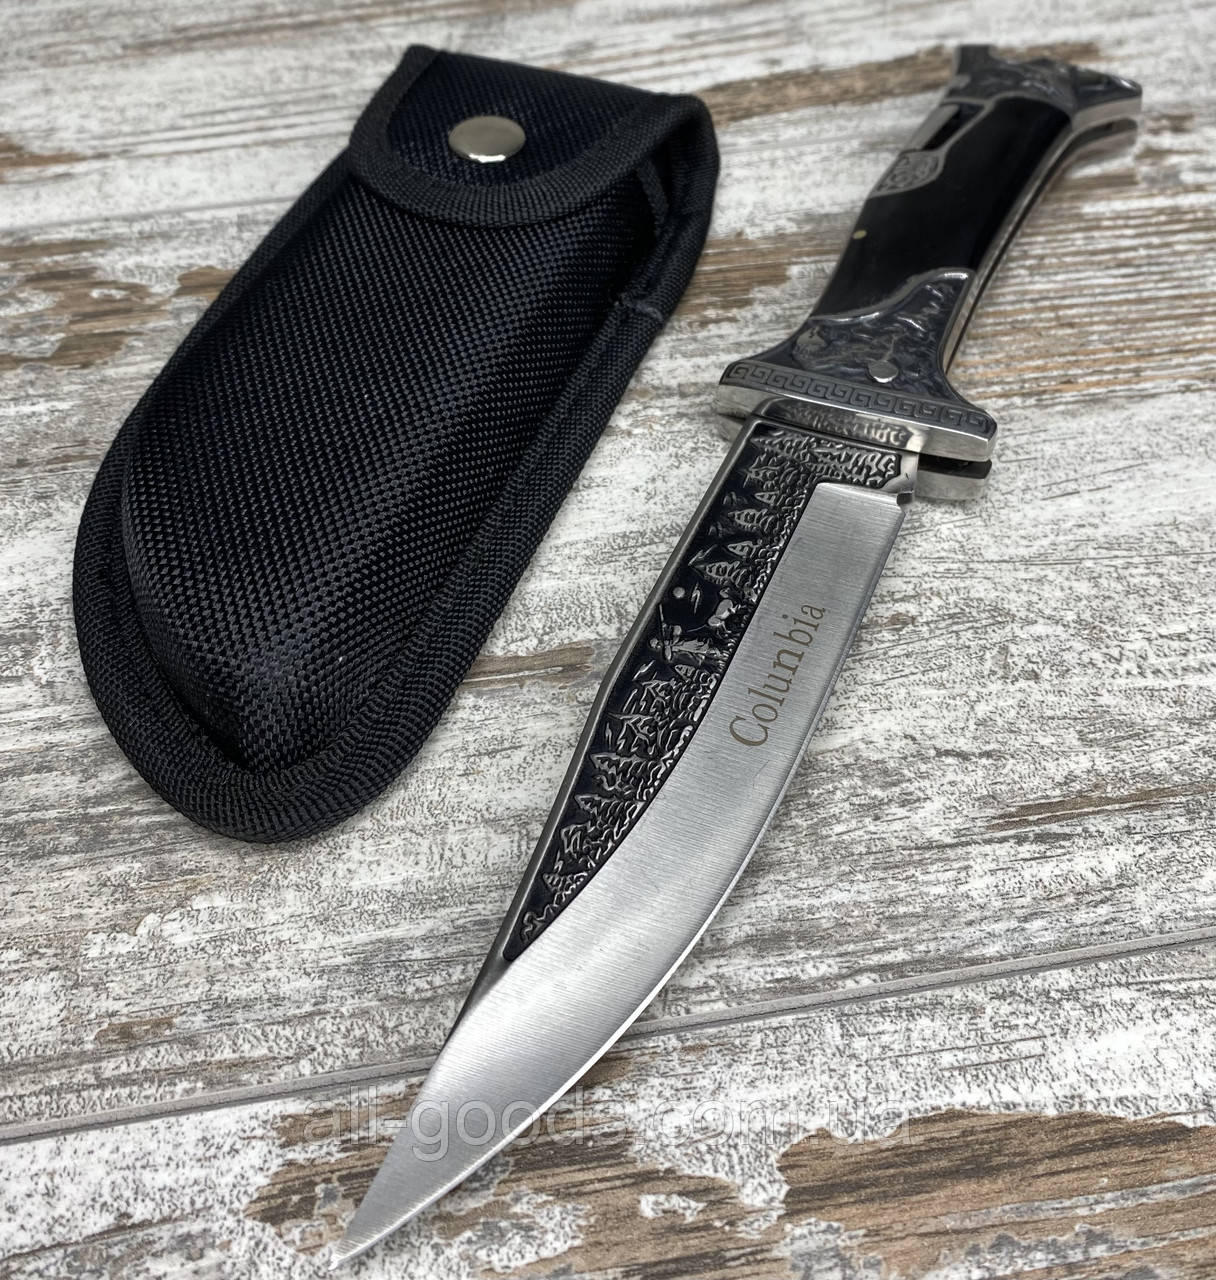 Нож складной охотничий Colunbia КА3188 27см / Н-7803 для выживания. Нож для охоты с гравировкой All